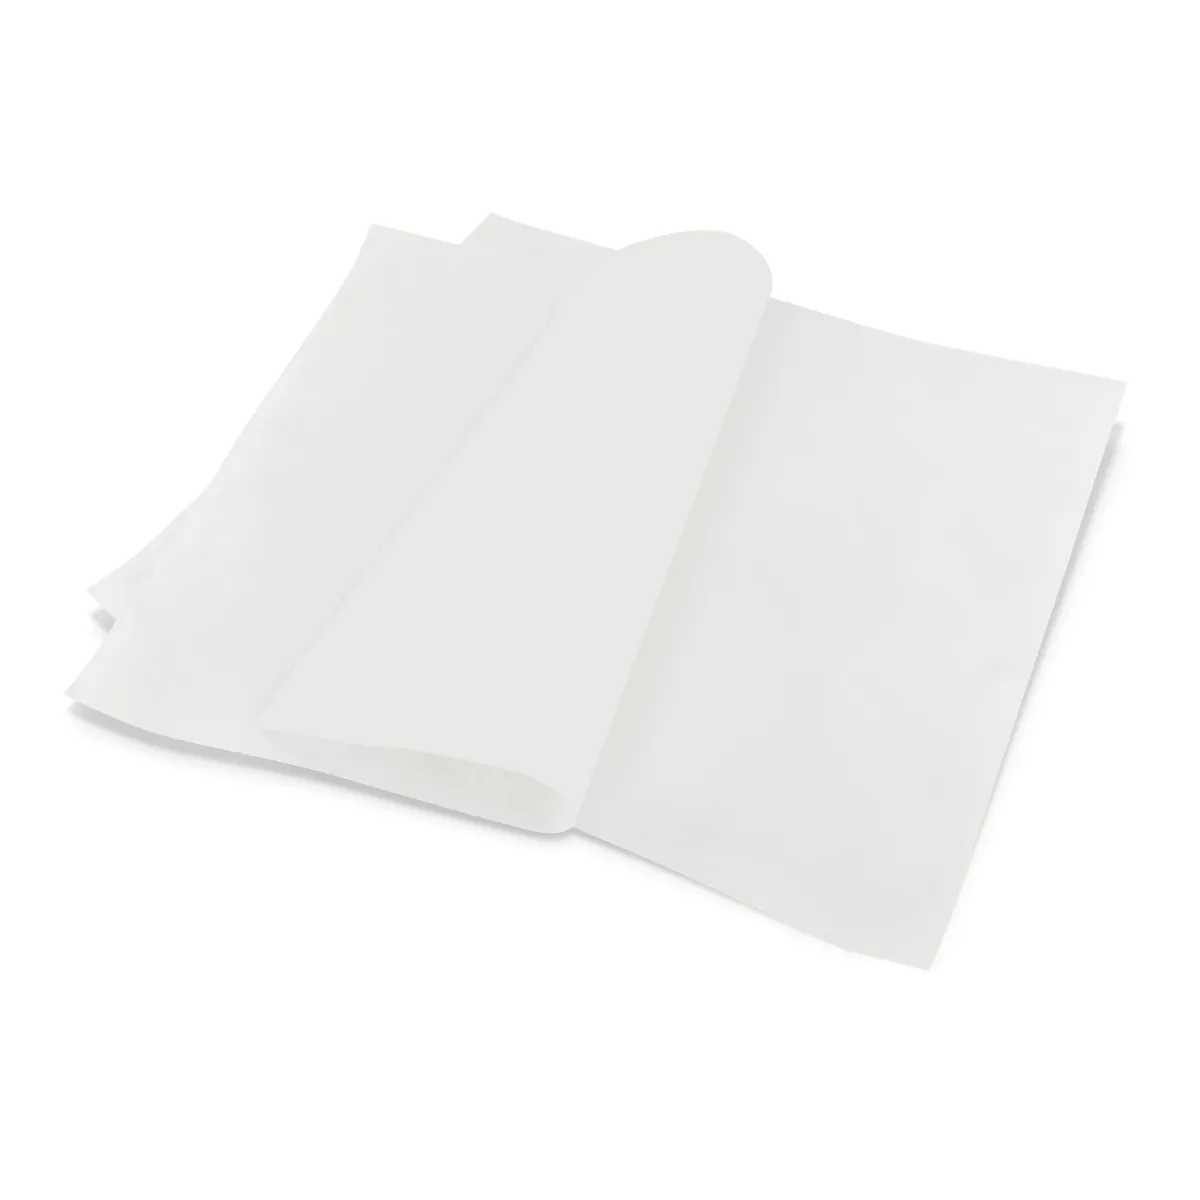 Обёрточная бумага, белая, 305 х 305 мм, 250 шт